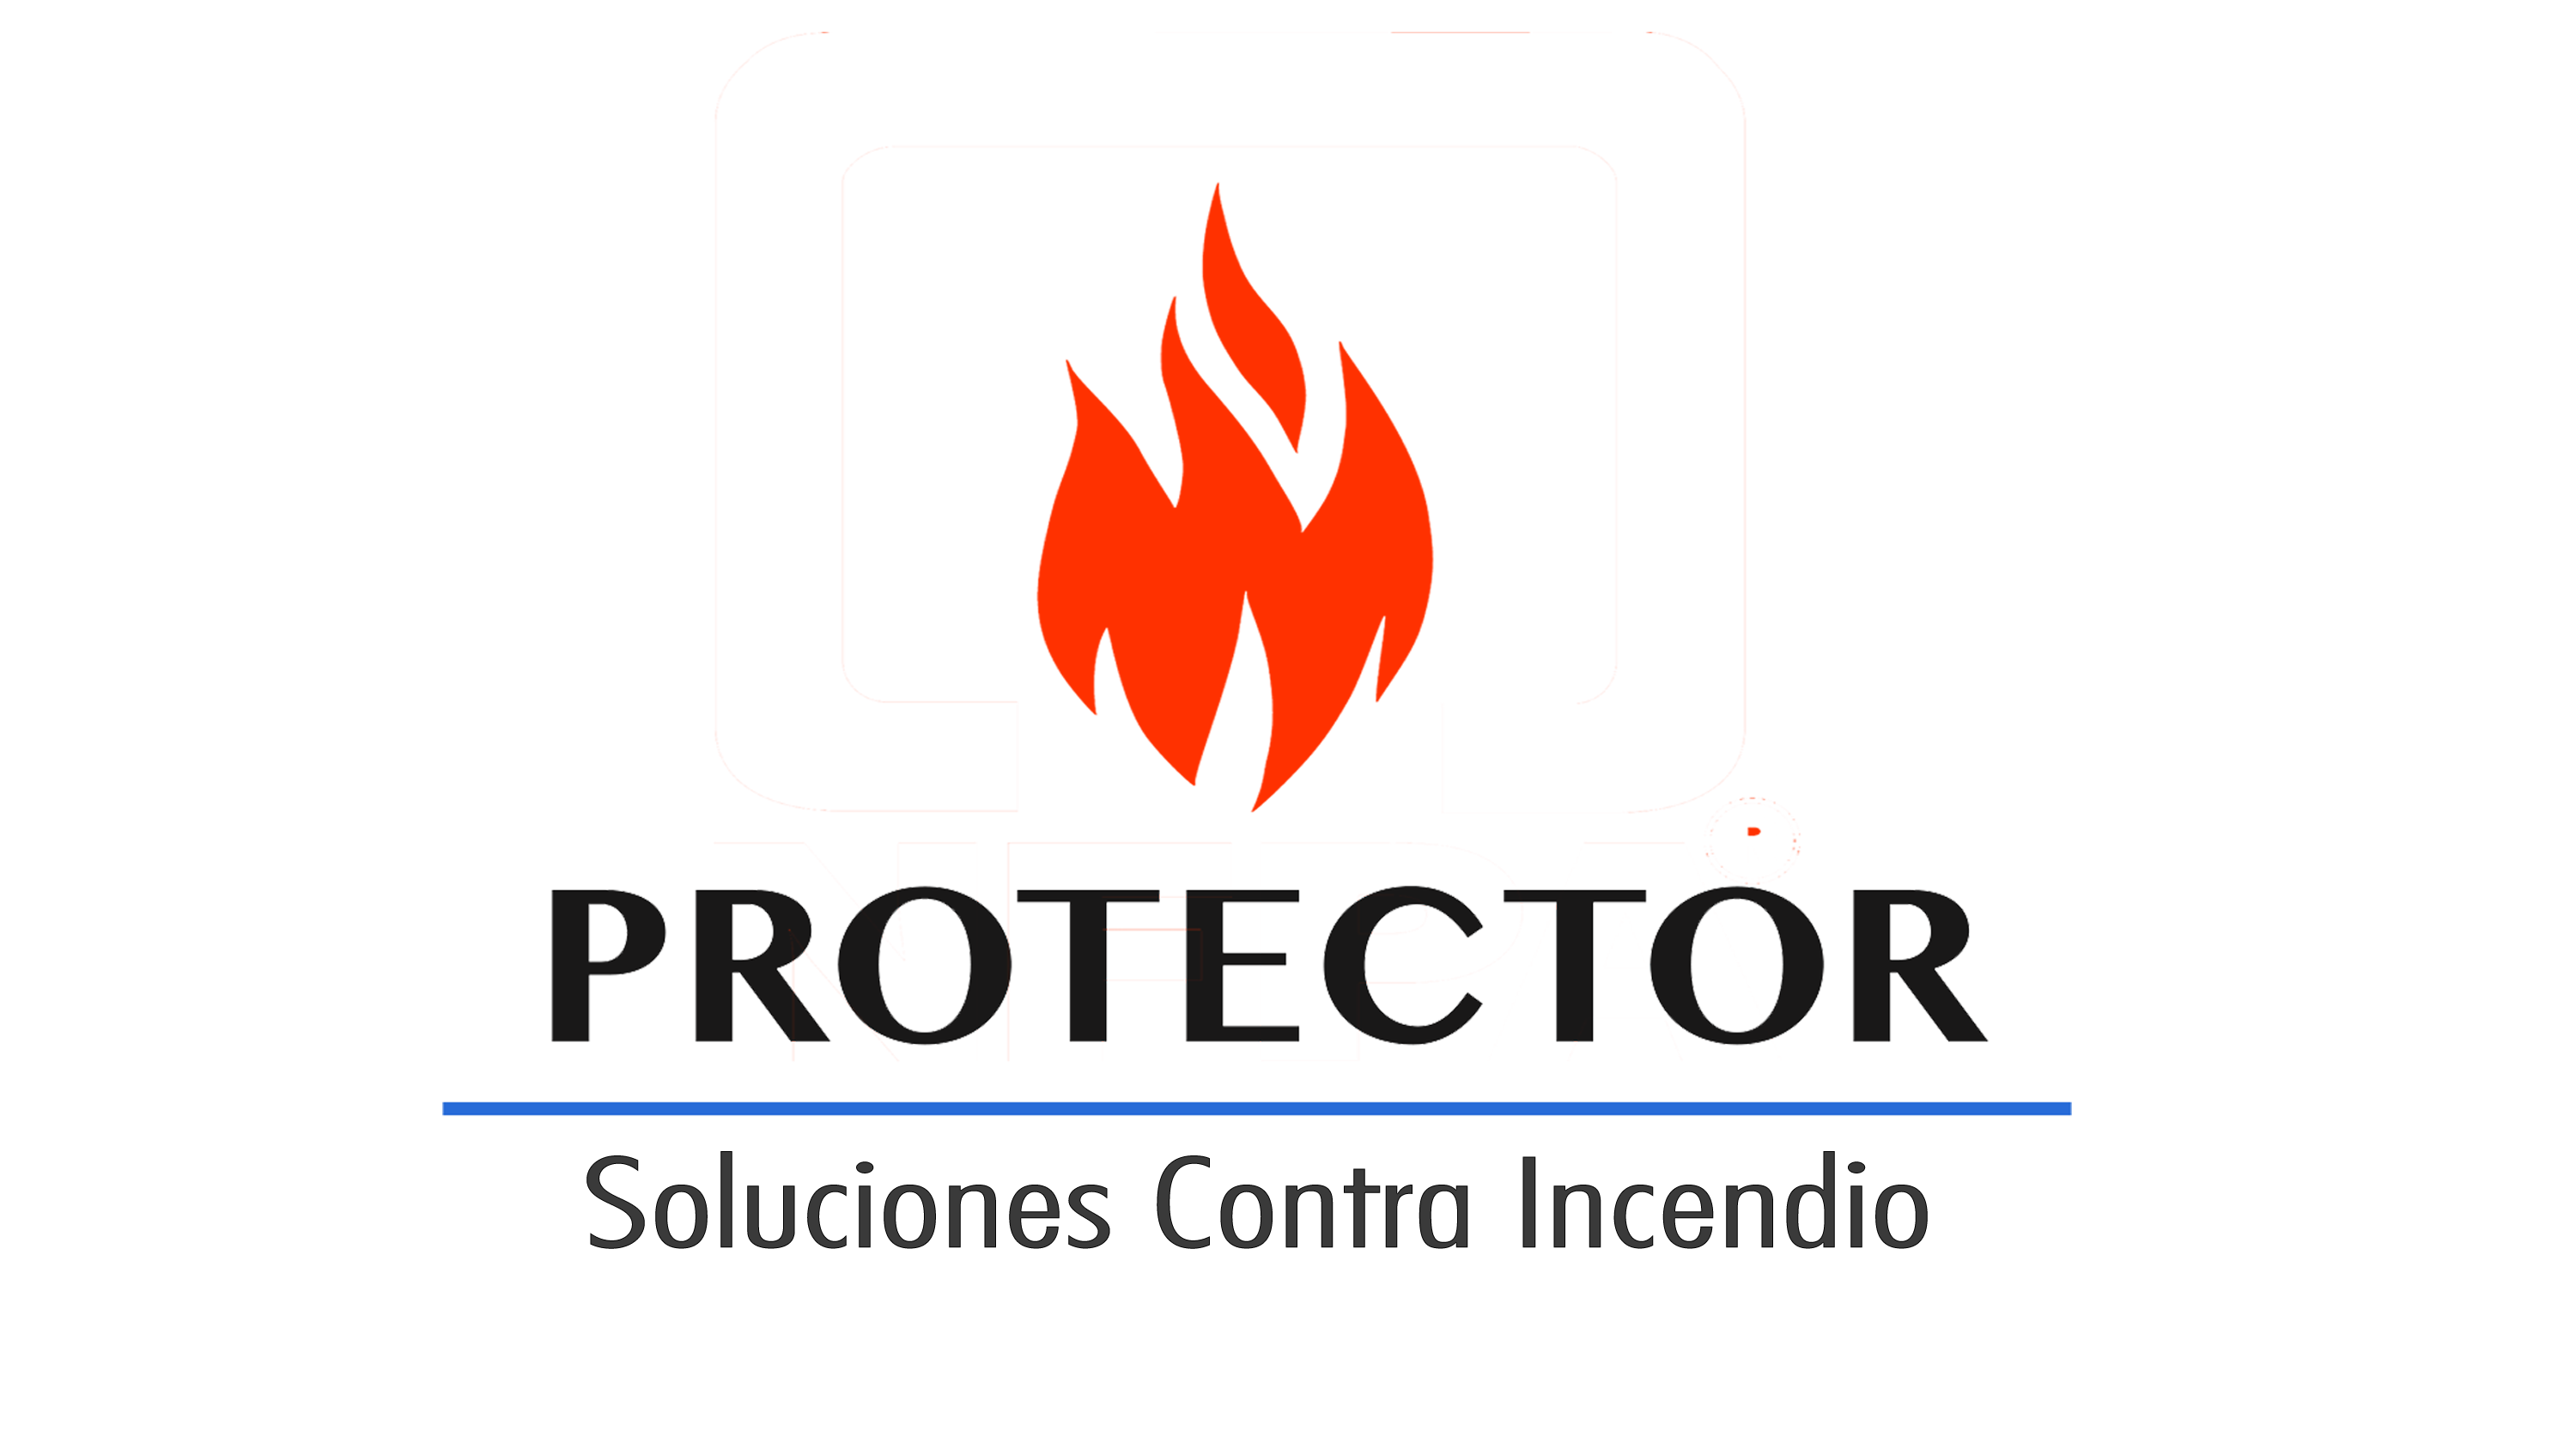 Protector Soluciones Contra Incendio